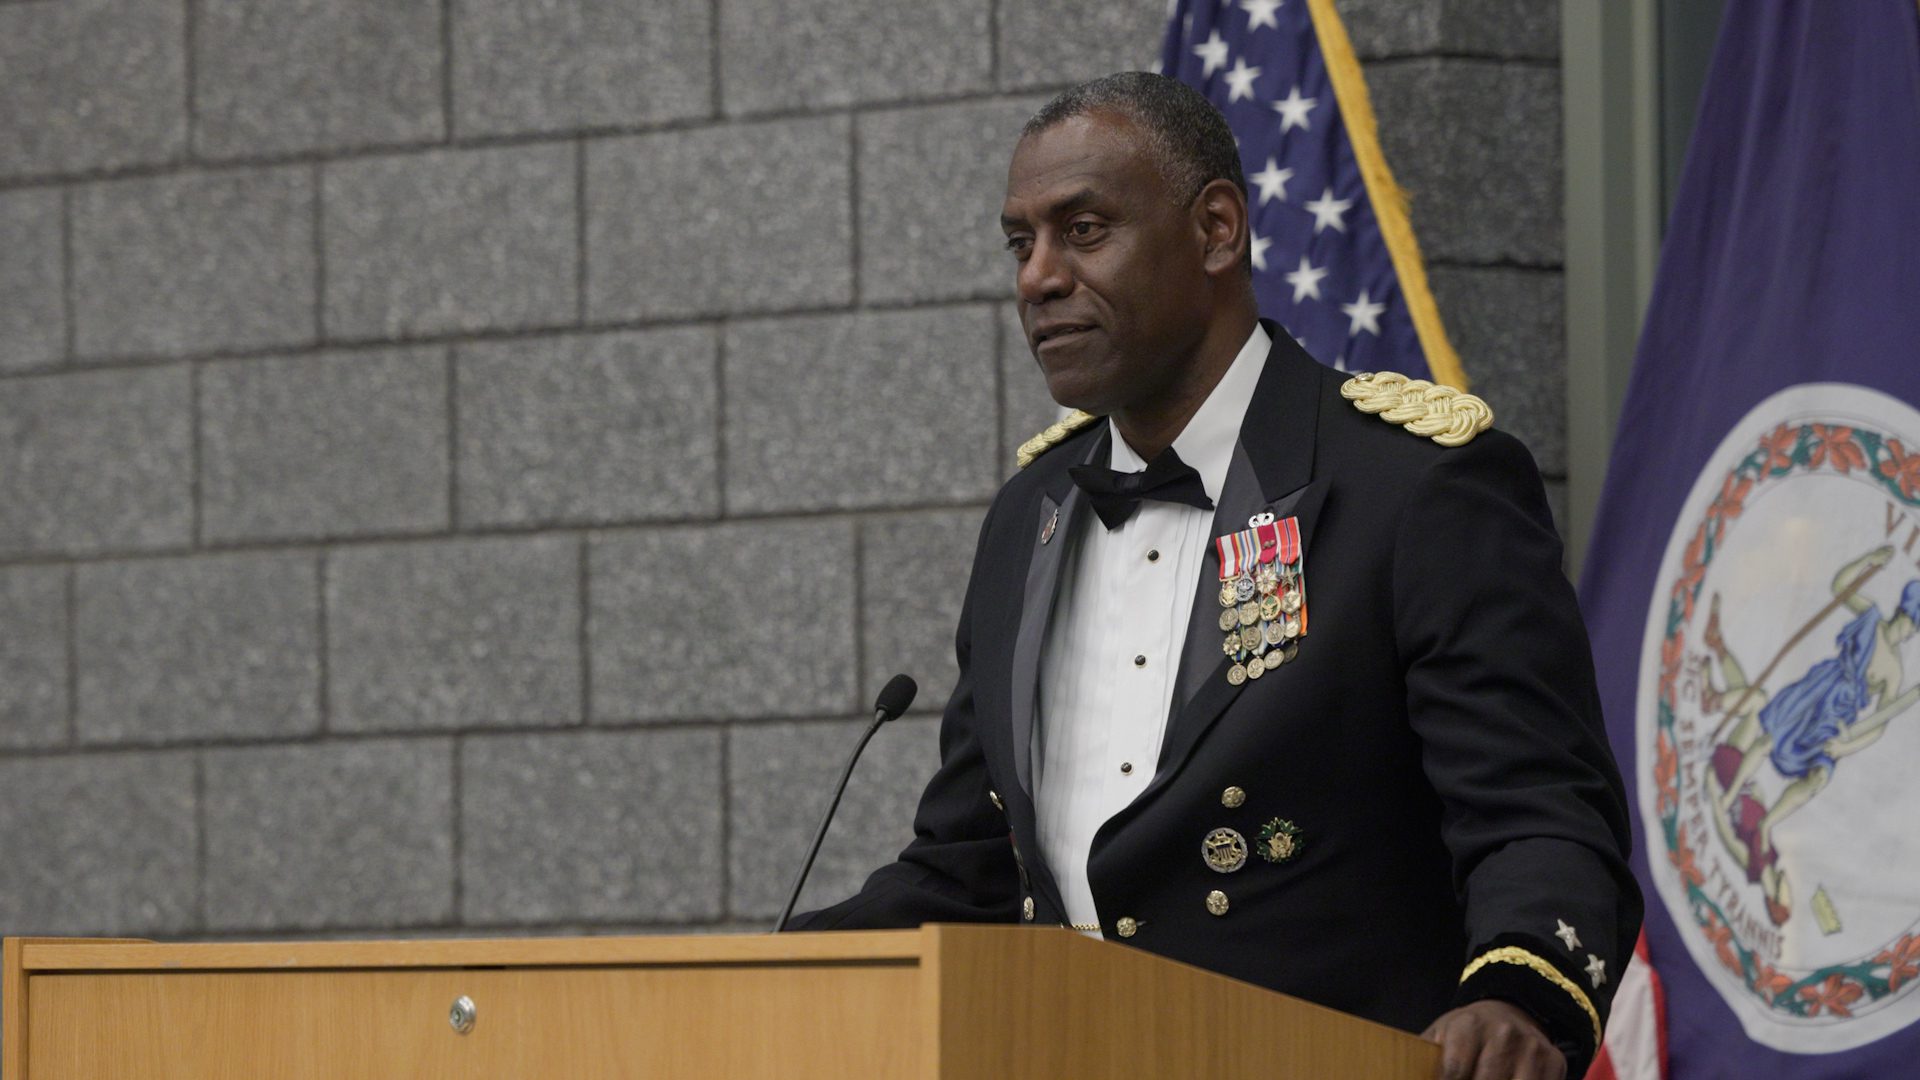 Maj. Gen. Wins speaking at podium.